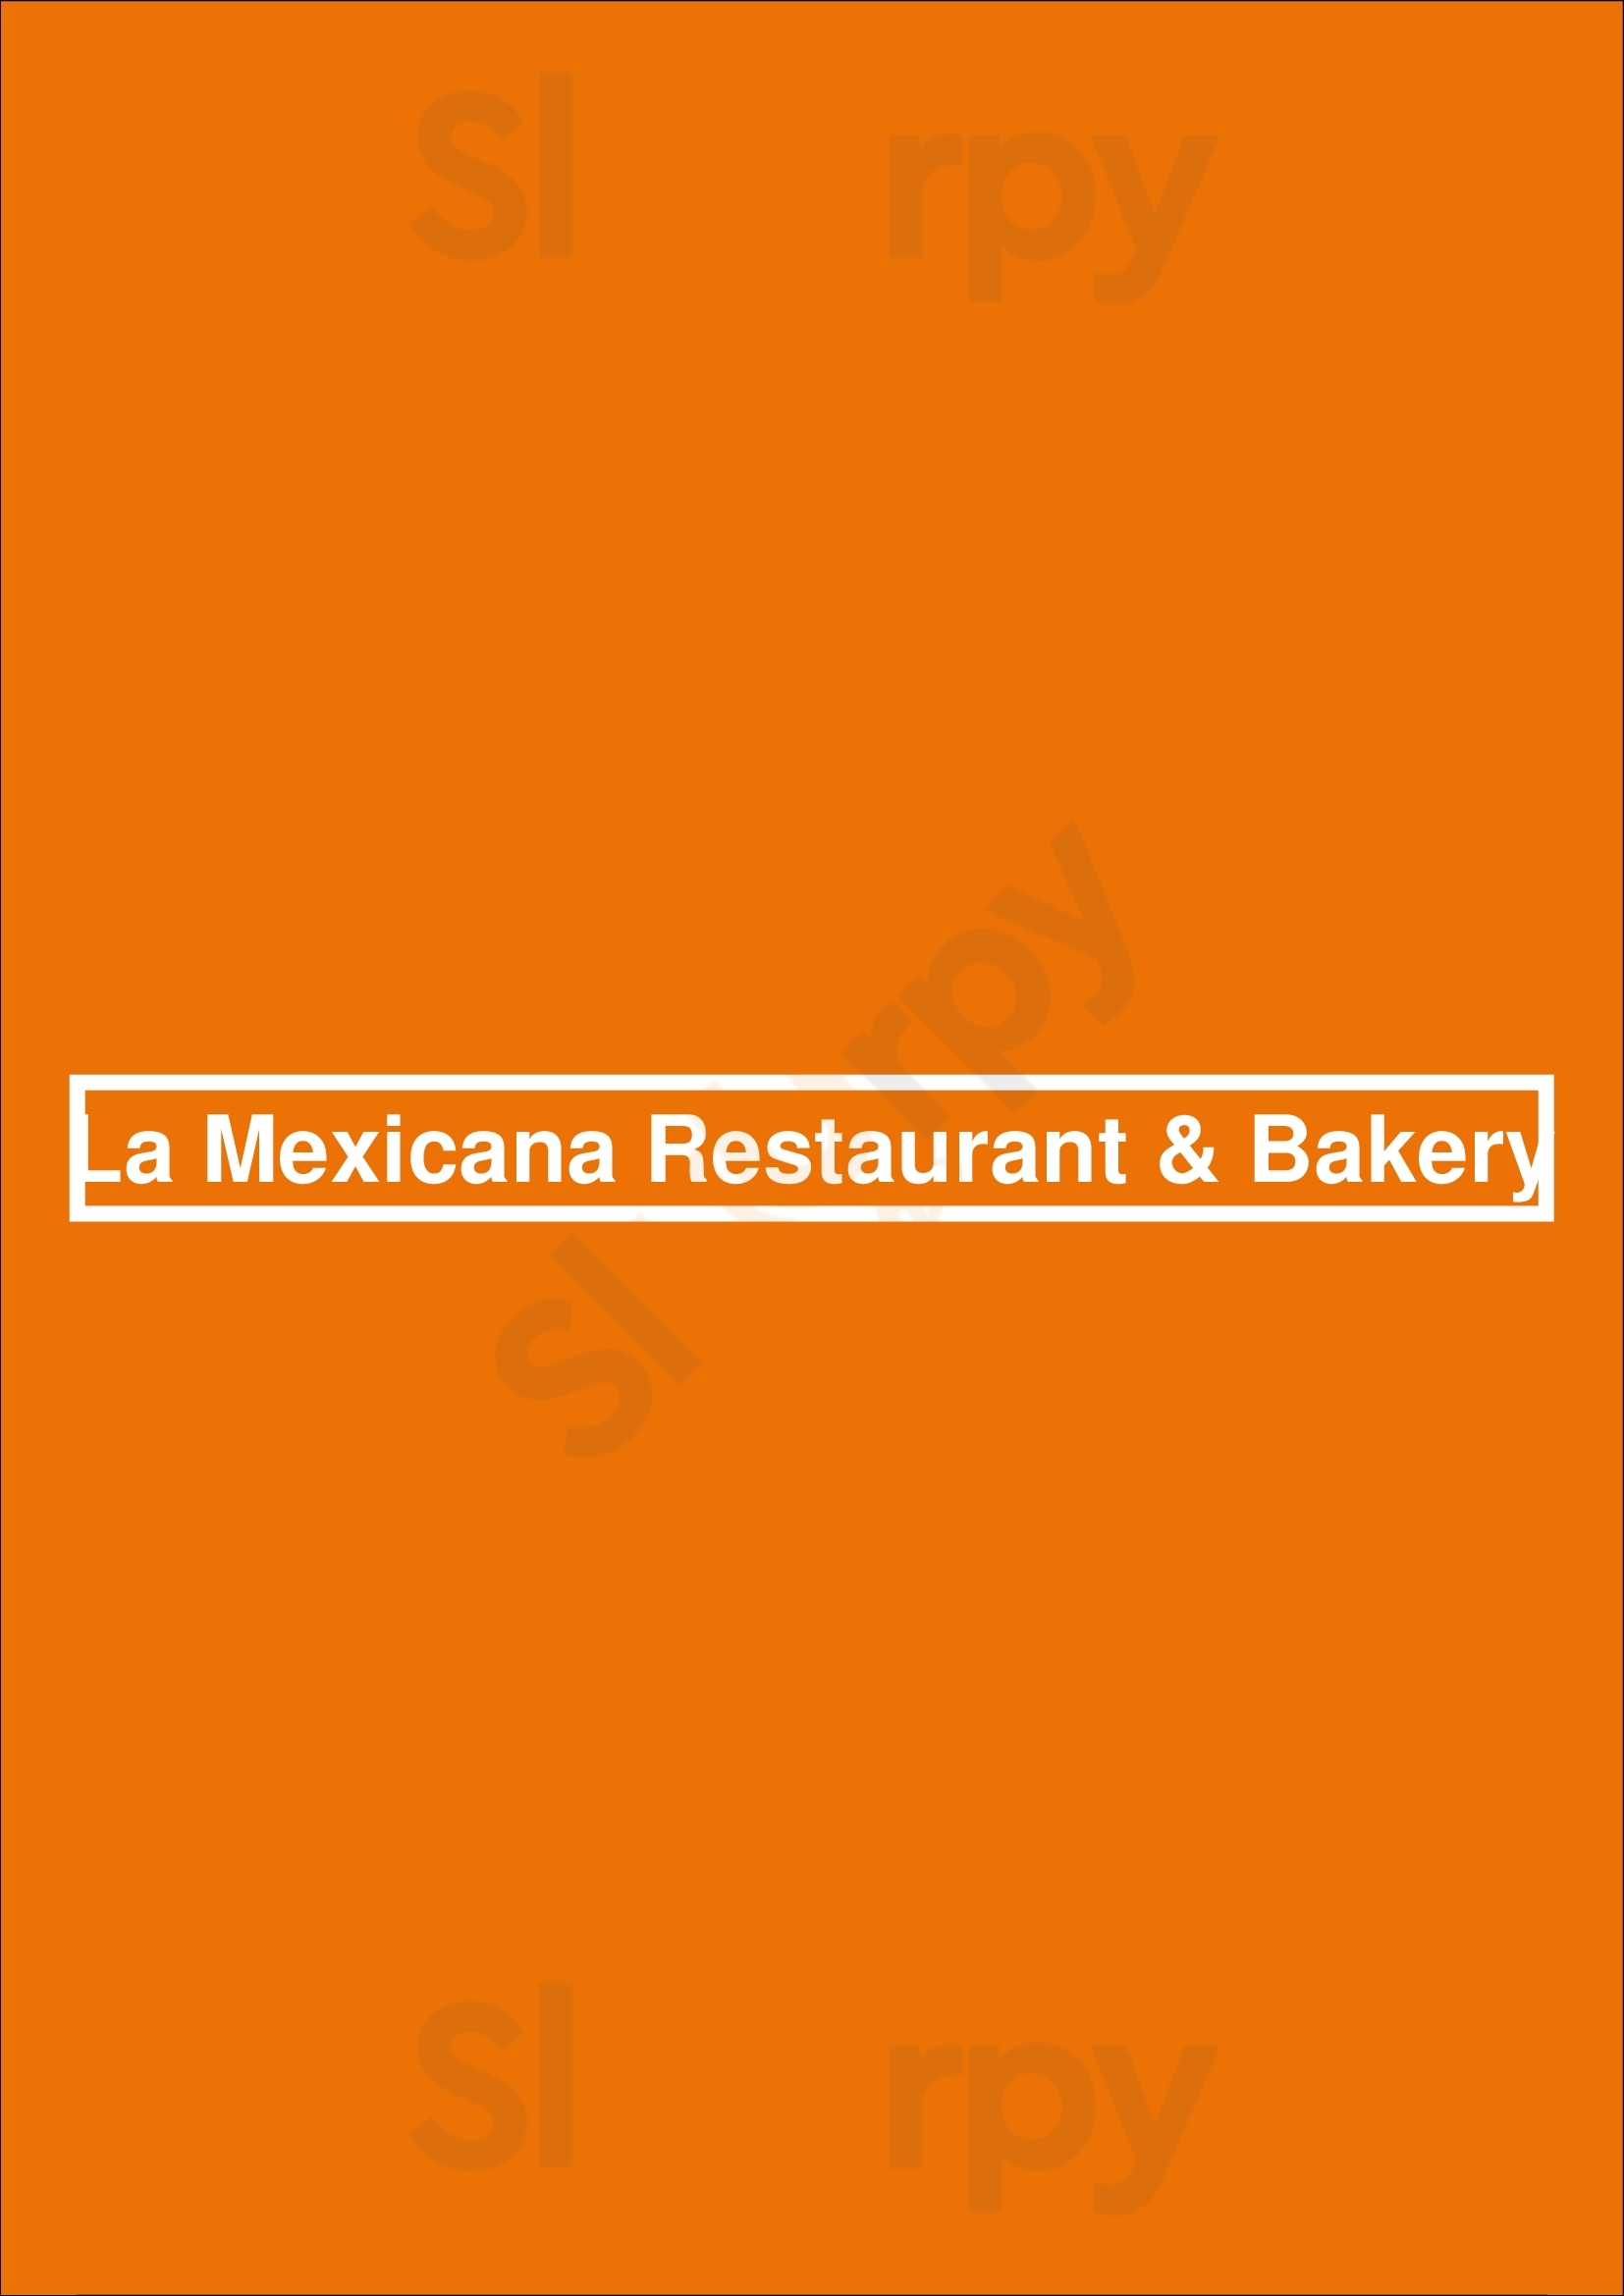 La Mexicana Restaurant & Bakery Bridgeport Menu - 1